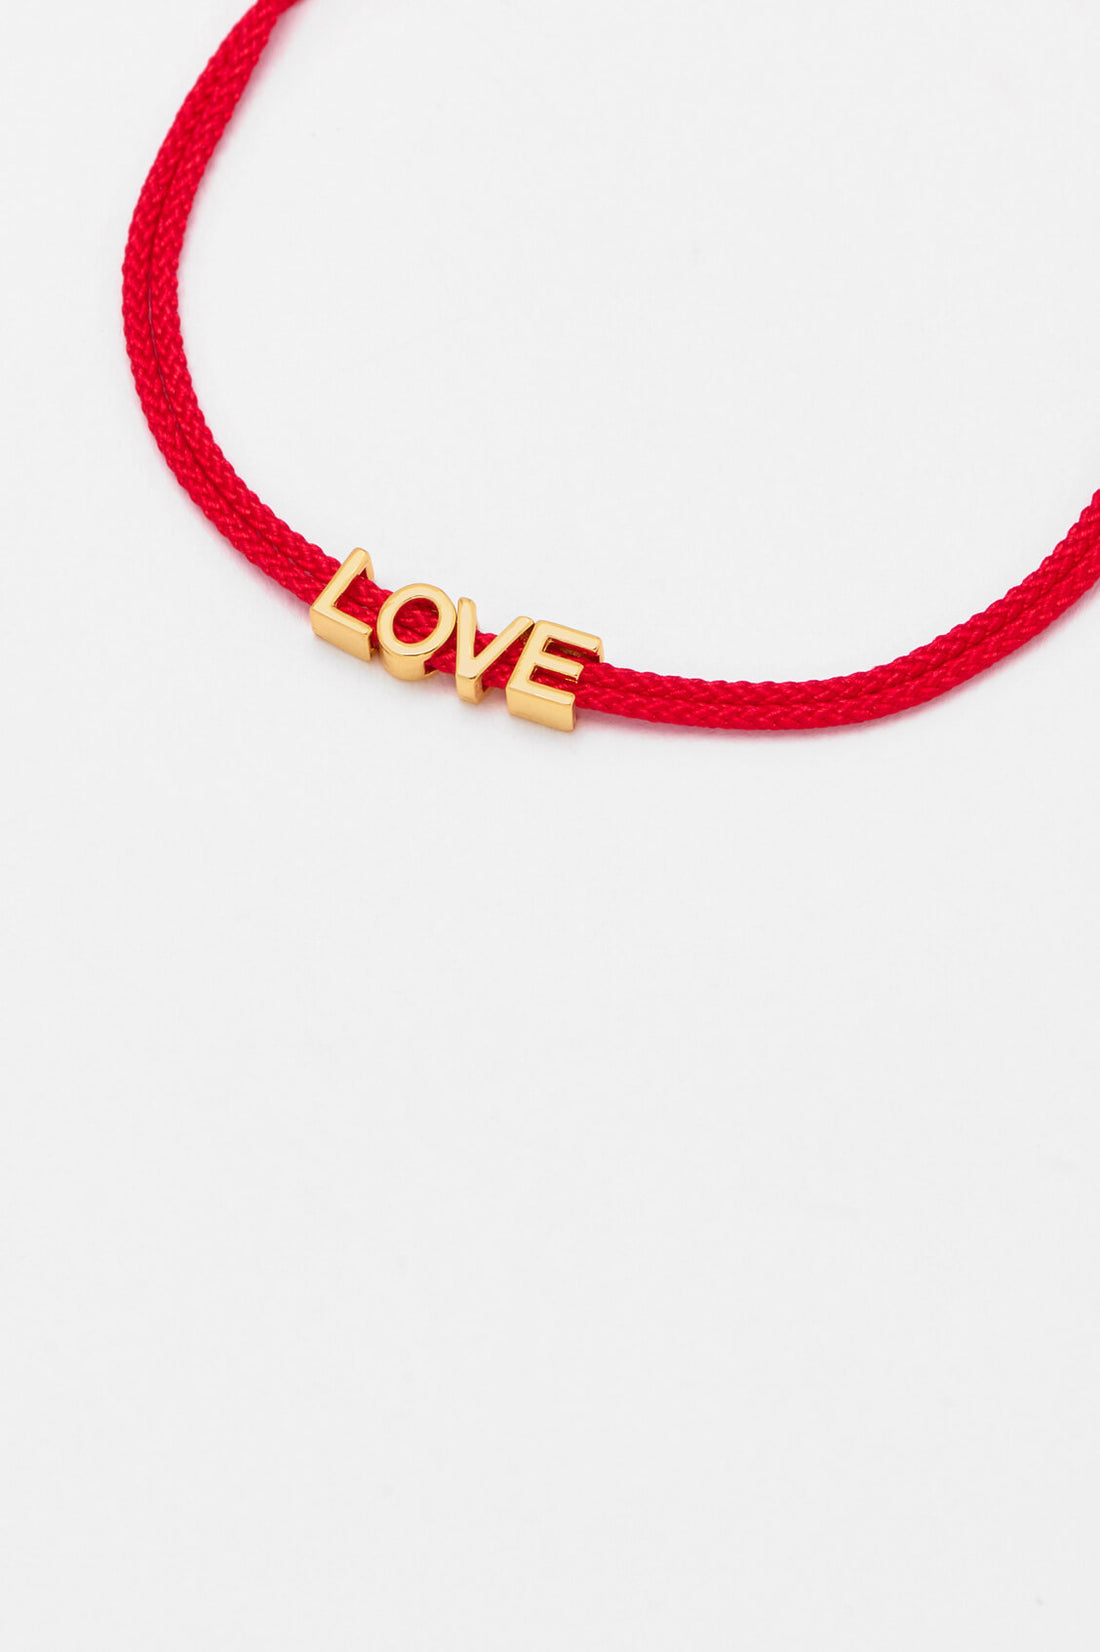 Love Slider Bead Friendship Bracelet - Gold Plated